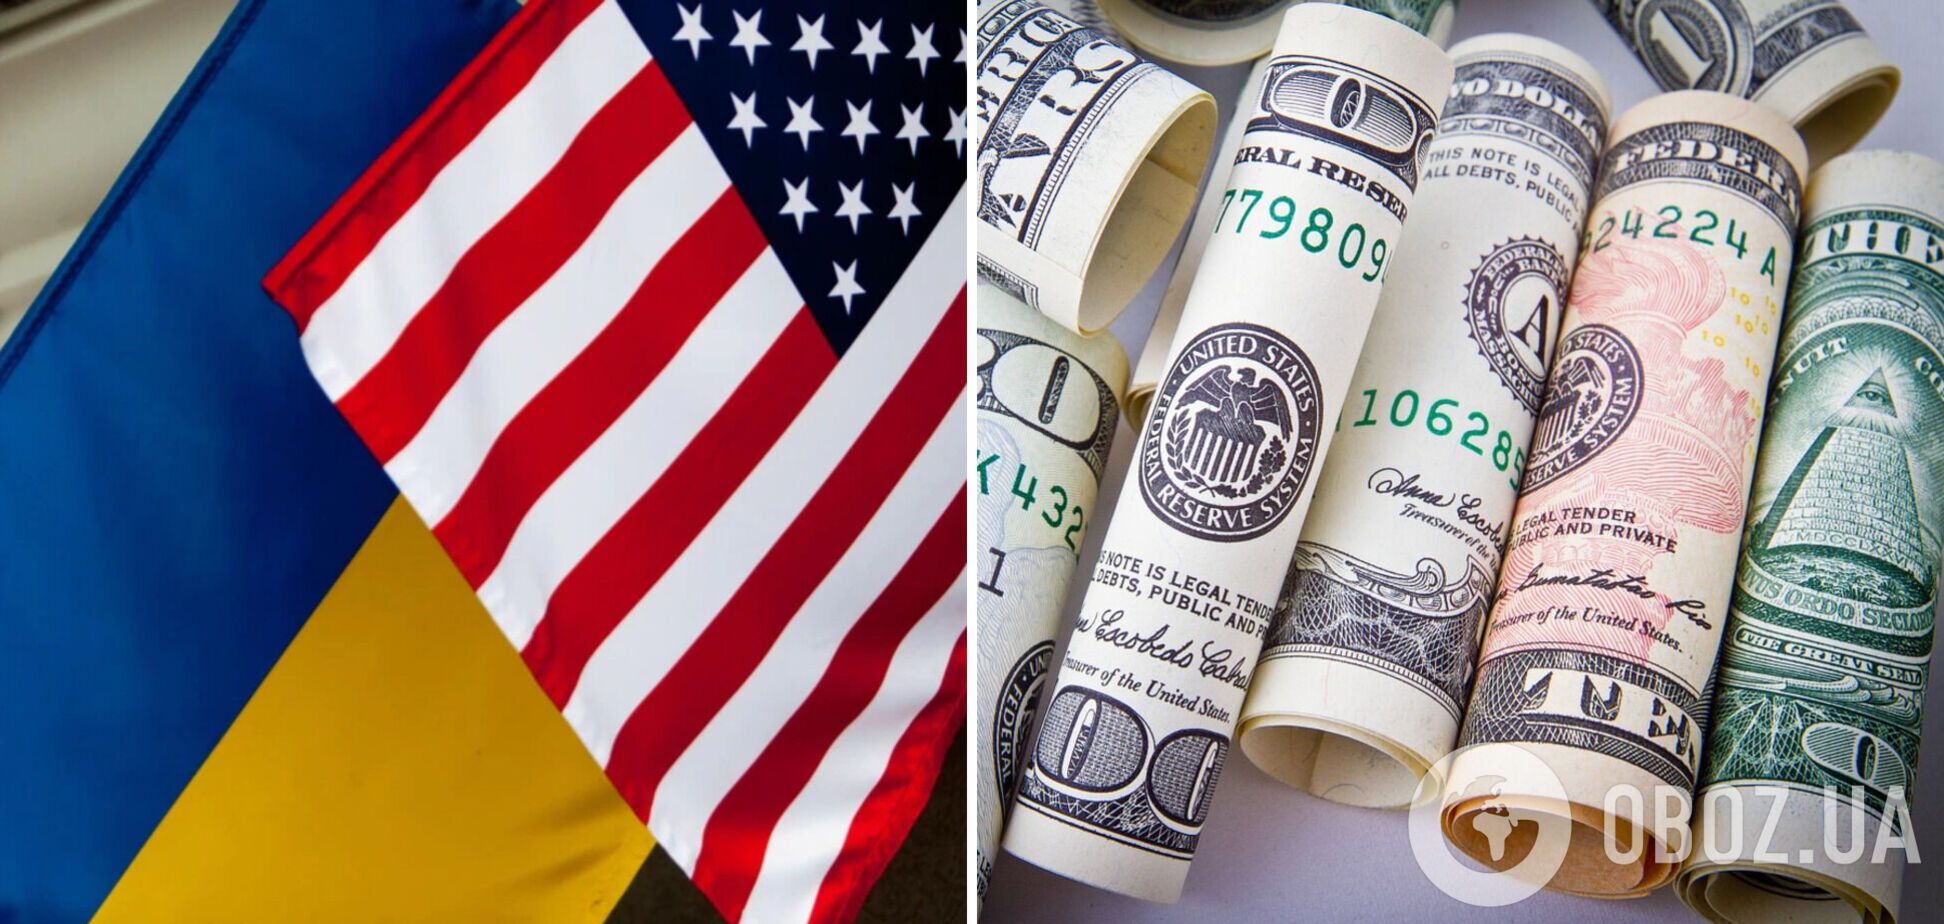 Украина получила от США 1,5 млрд долларов помощи